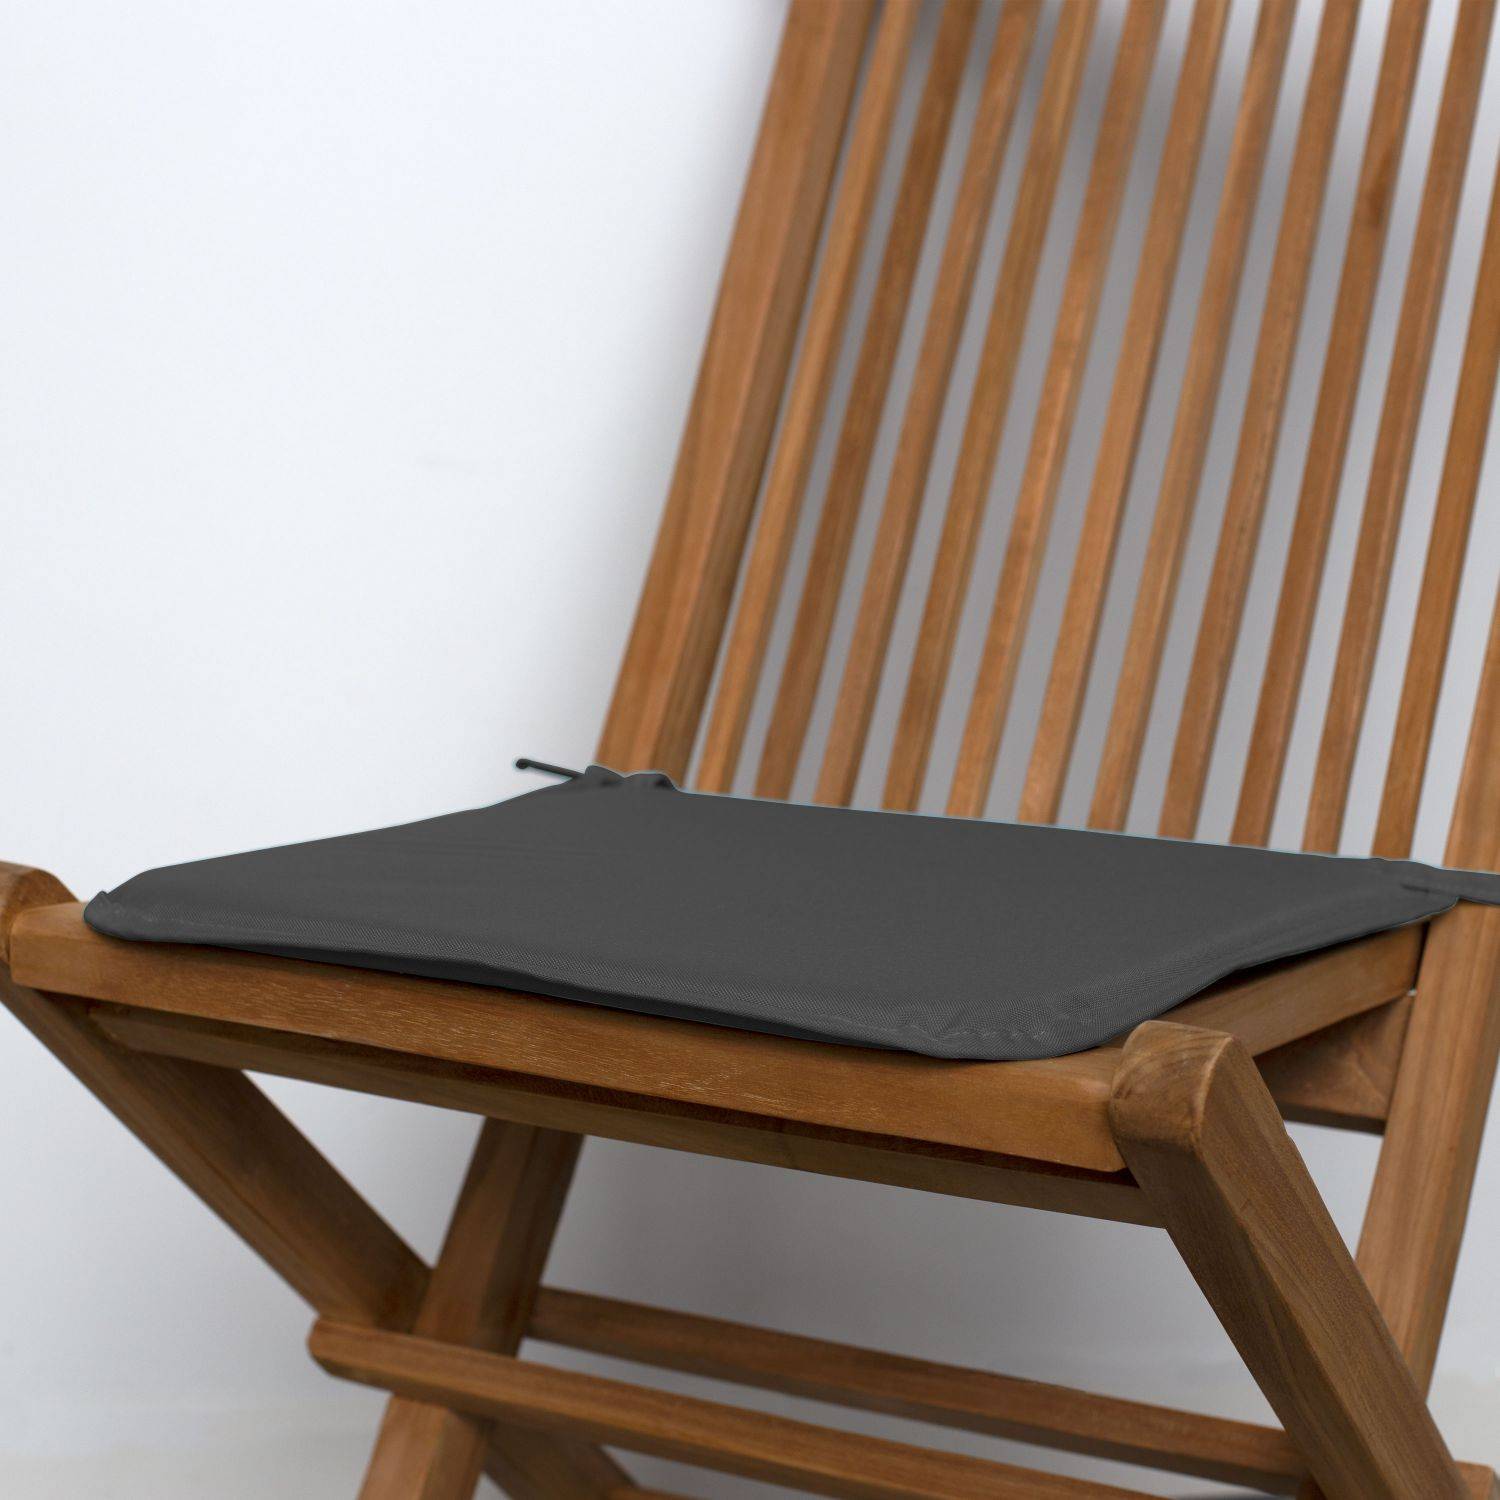 Lot de 4 galettes de chaise – 38 x 38 cm – Quartz (gris anthracite), assise avec fixation à nœuds, bords gansés Photo2